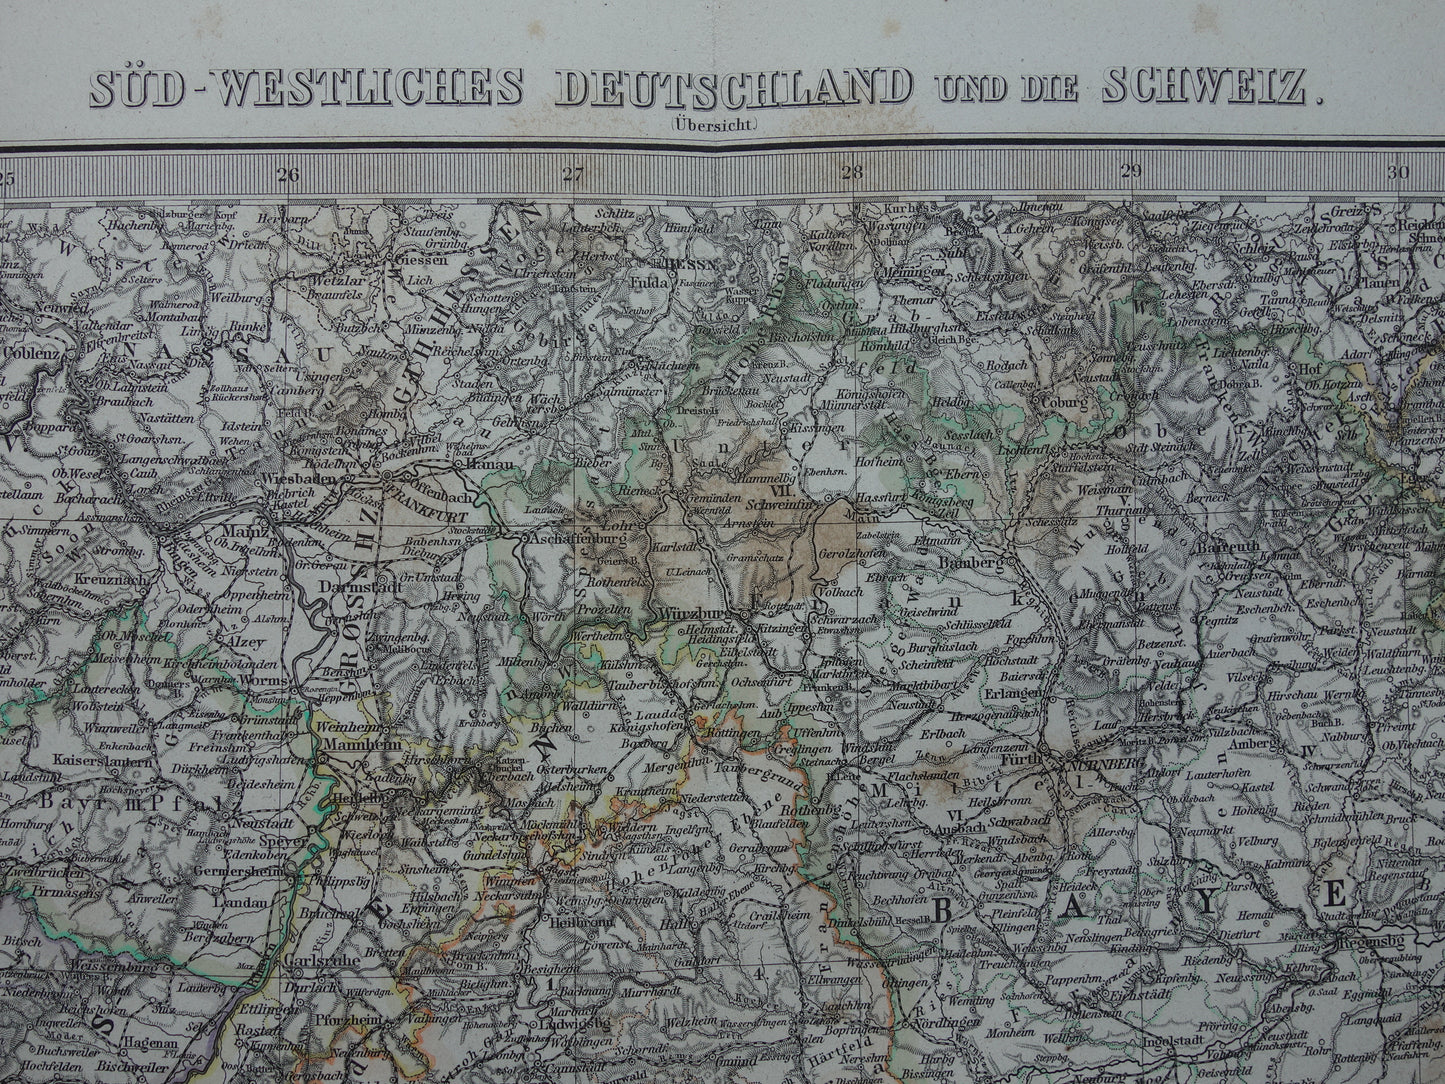 Oude landkaart van Zuid-Duitsland en Zwitserland originele 145+ jaar oude antieke kaart Elzas Lotharingen Württemberg Beieren